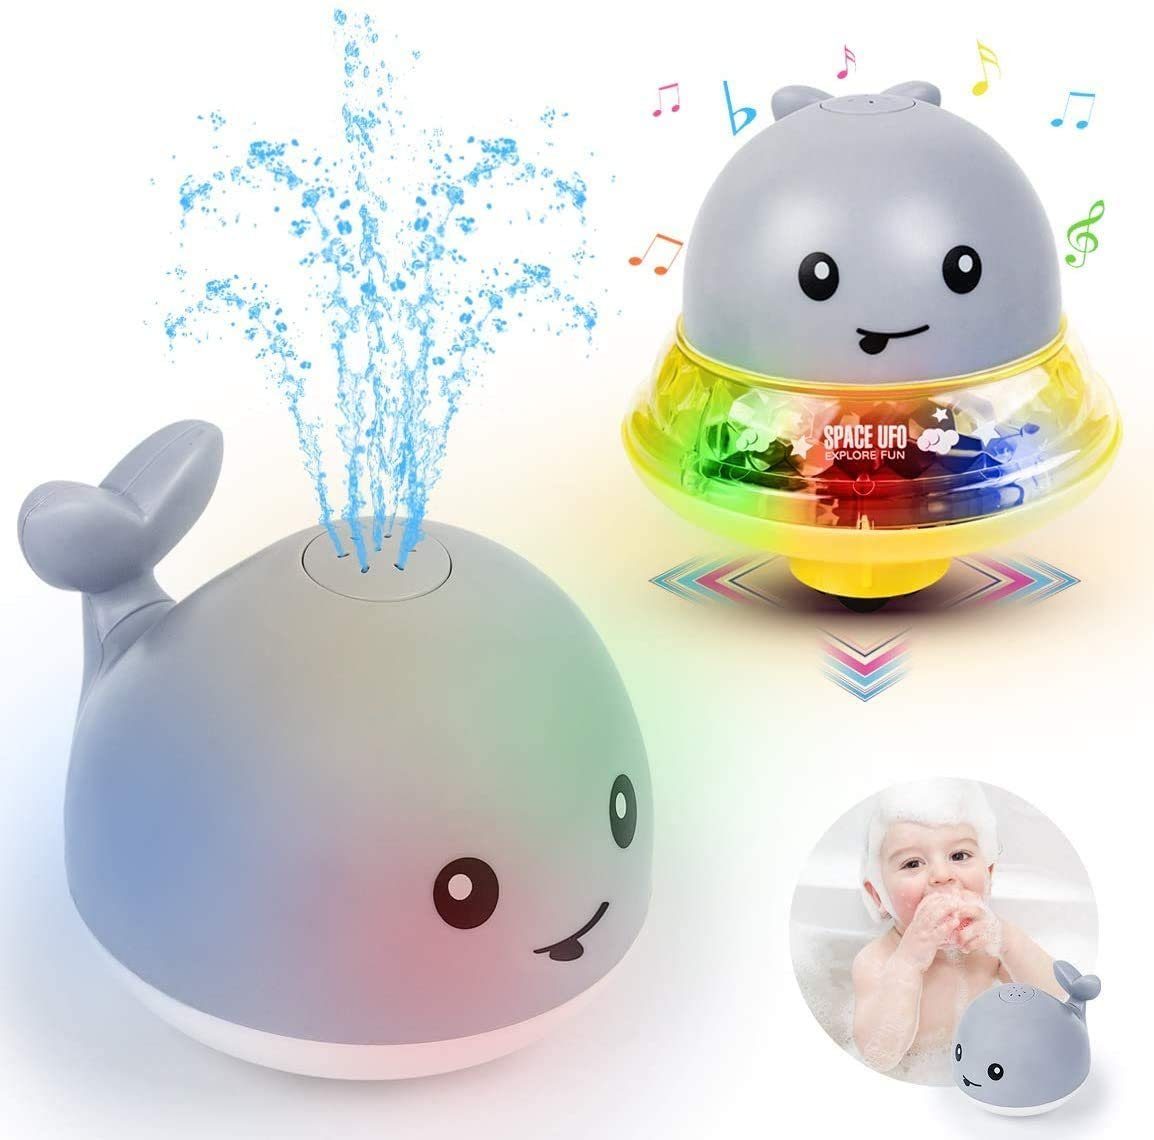 Kinder Elektrische Induktion Sprinkleranlage Spielzeug Licht Baby Badespielzeug 